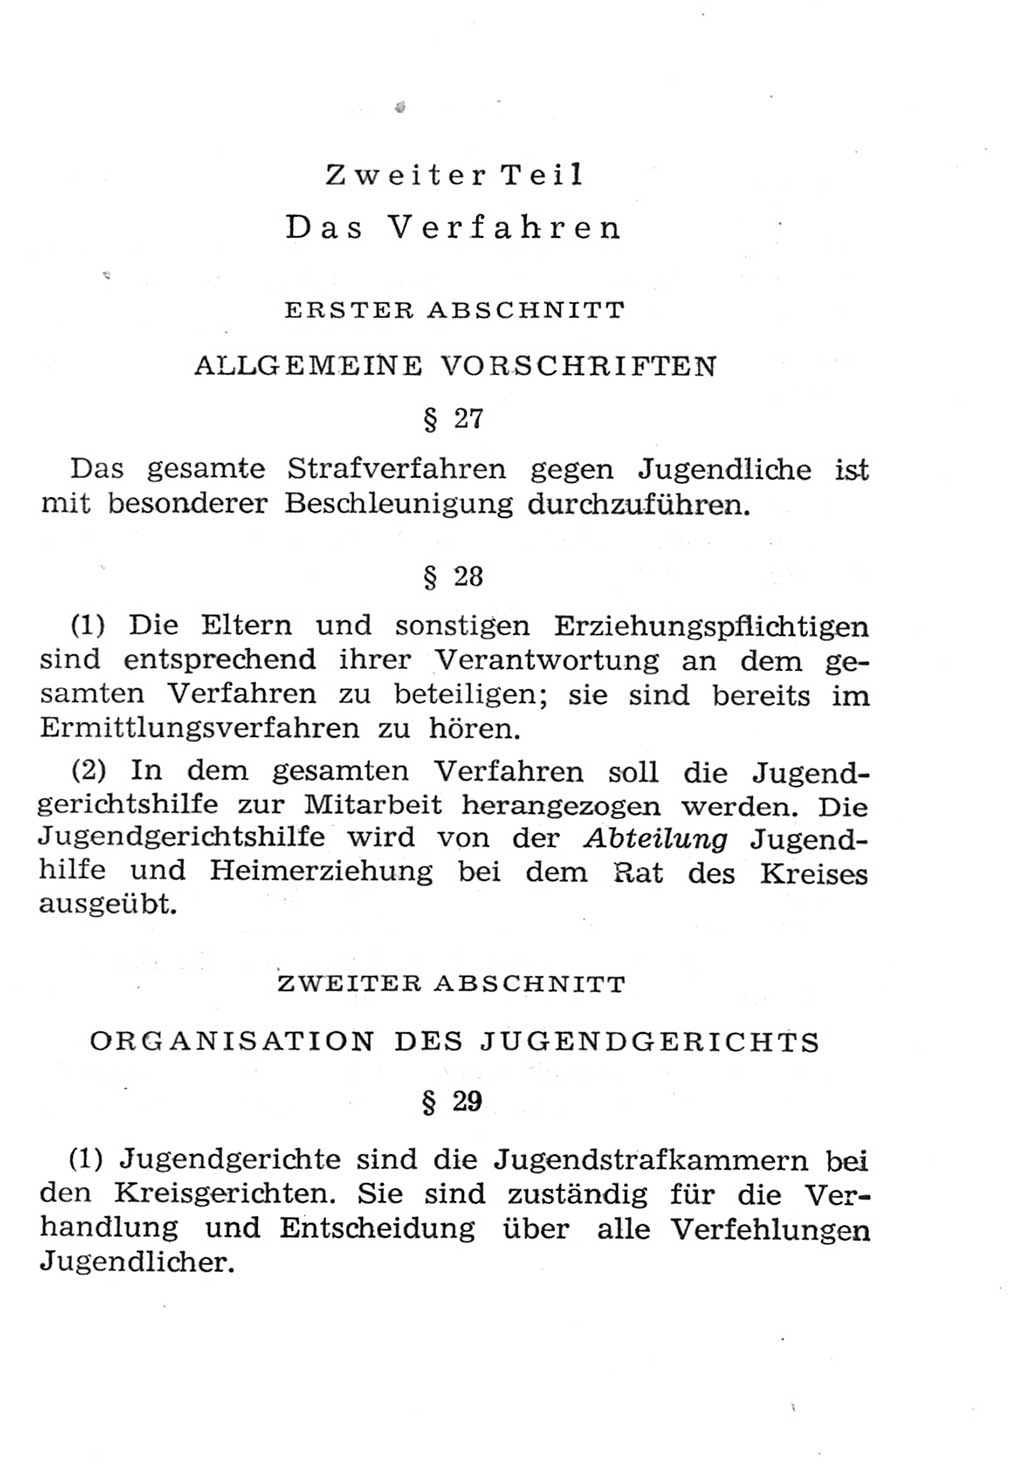 Strafgesetzbuch (StGB) und andere Strafgesetze [Deutsche Demokratische Republik (DDR)] 1957, Seite 409 (StGB Strafges. DDR 1957, S. 409)